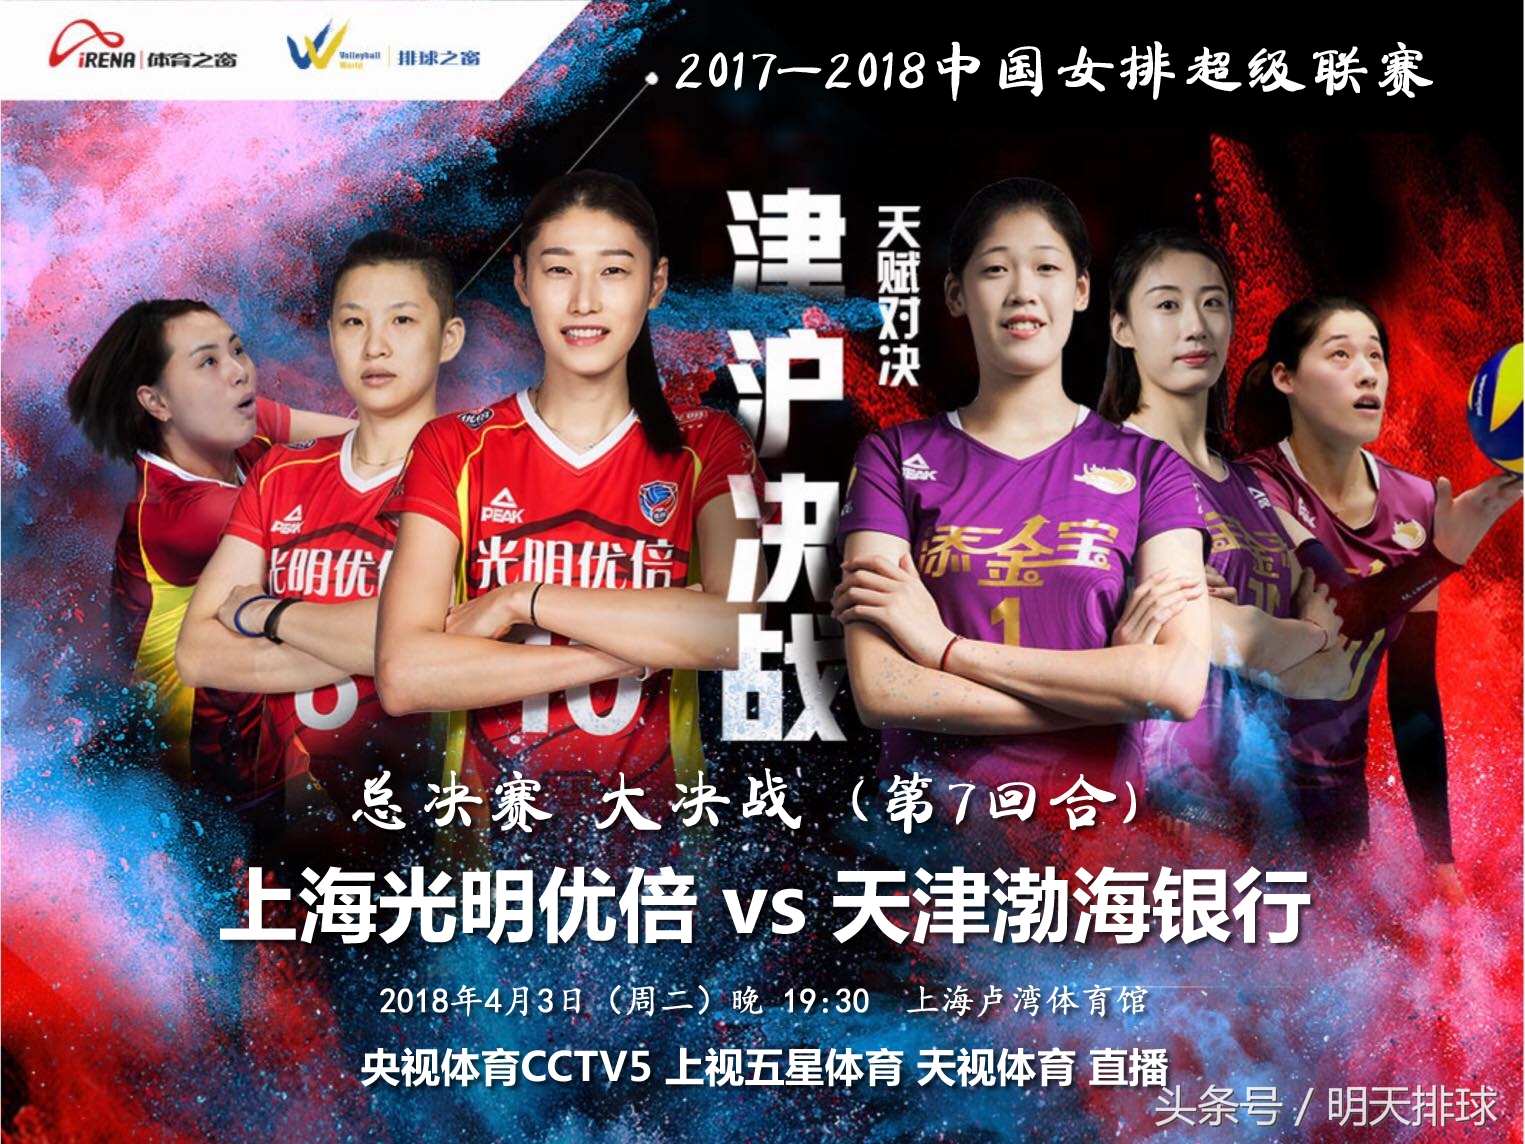 女排联赛“大决战” CCTV5等电视直播收看指南